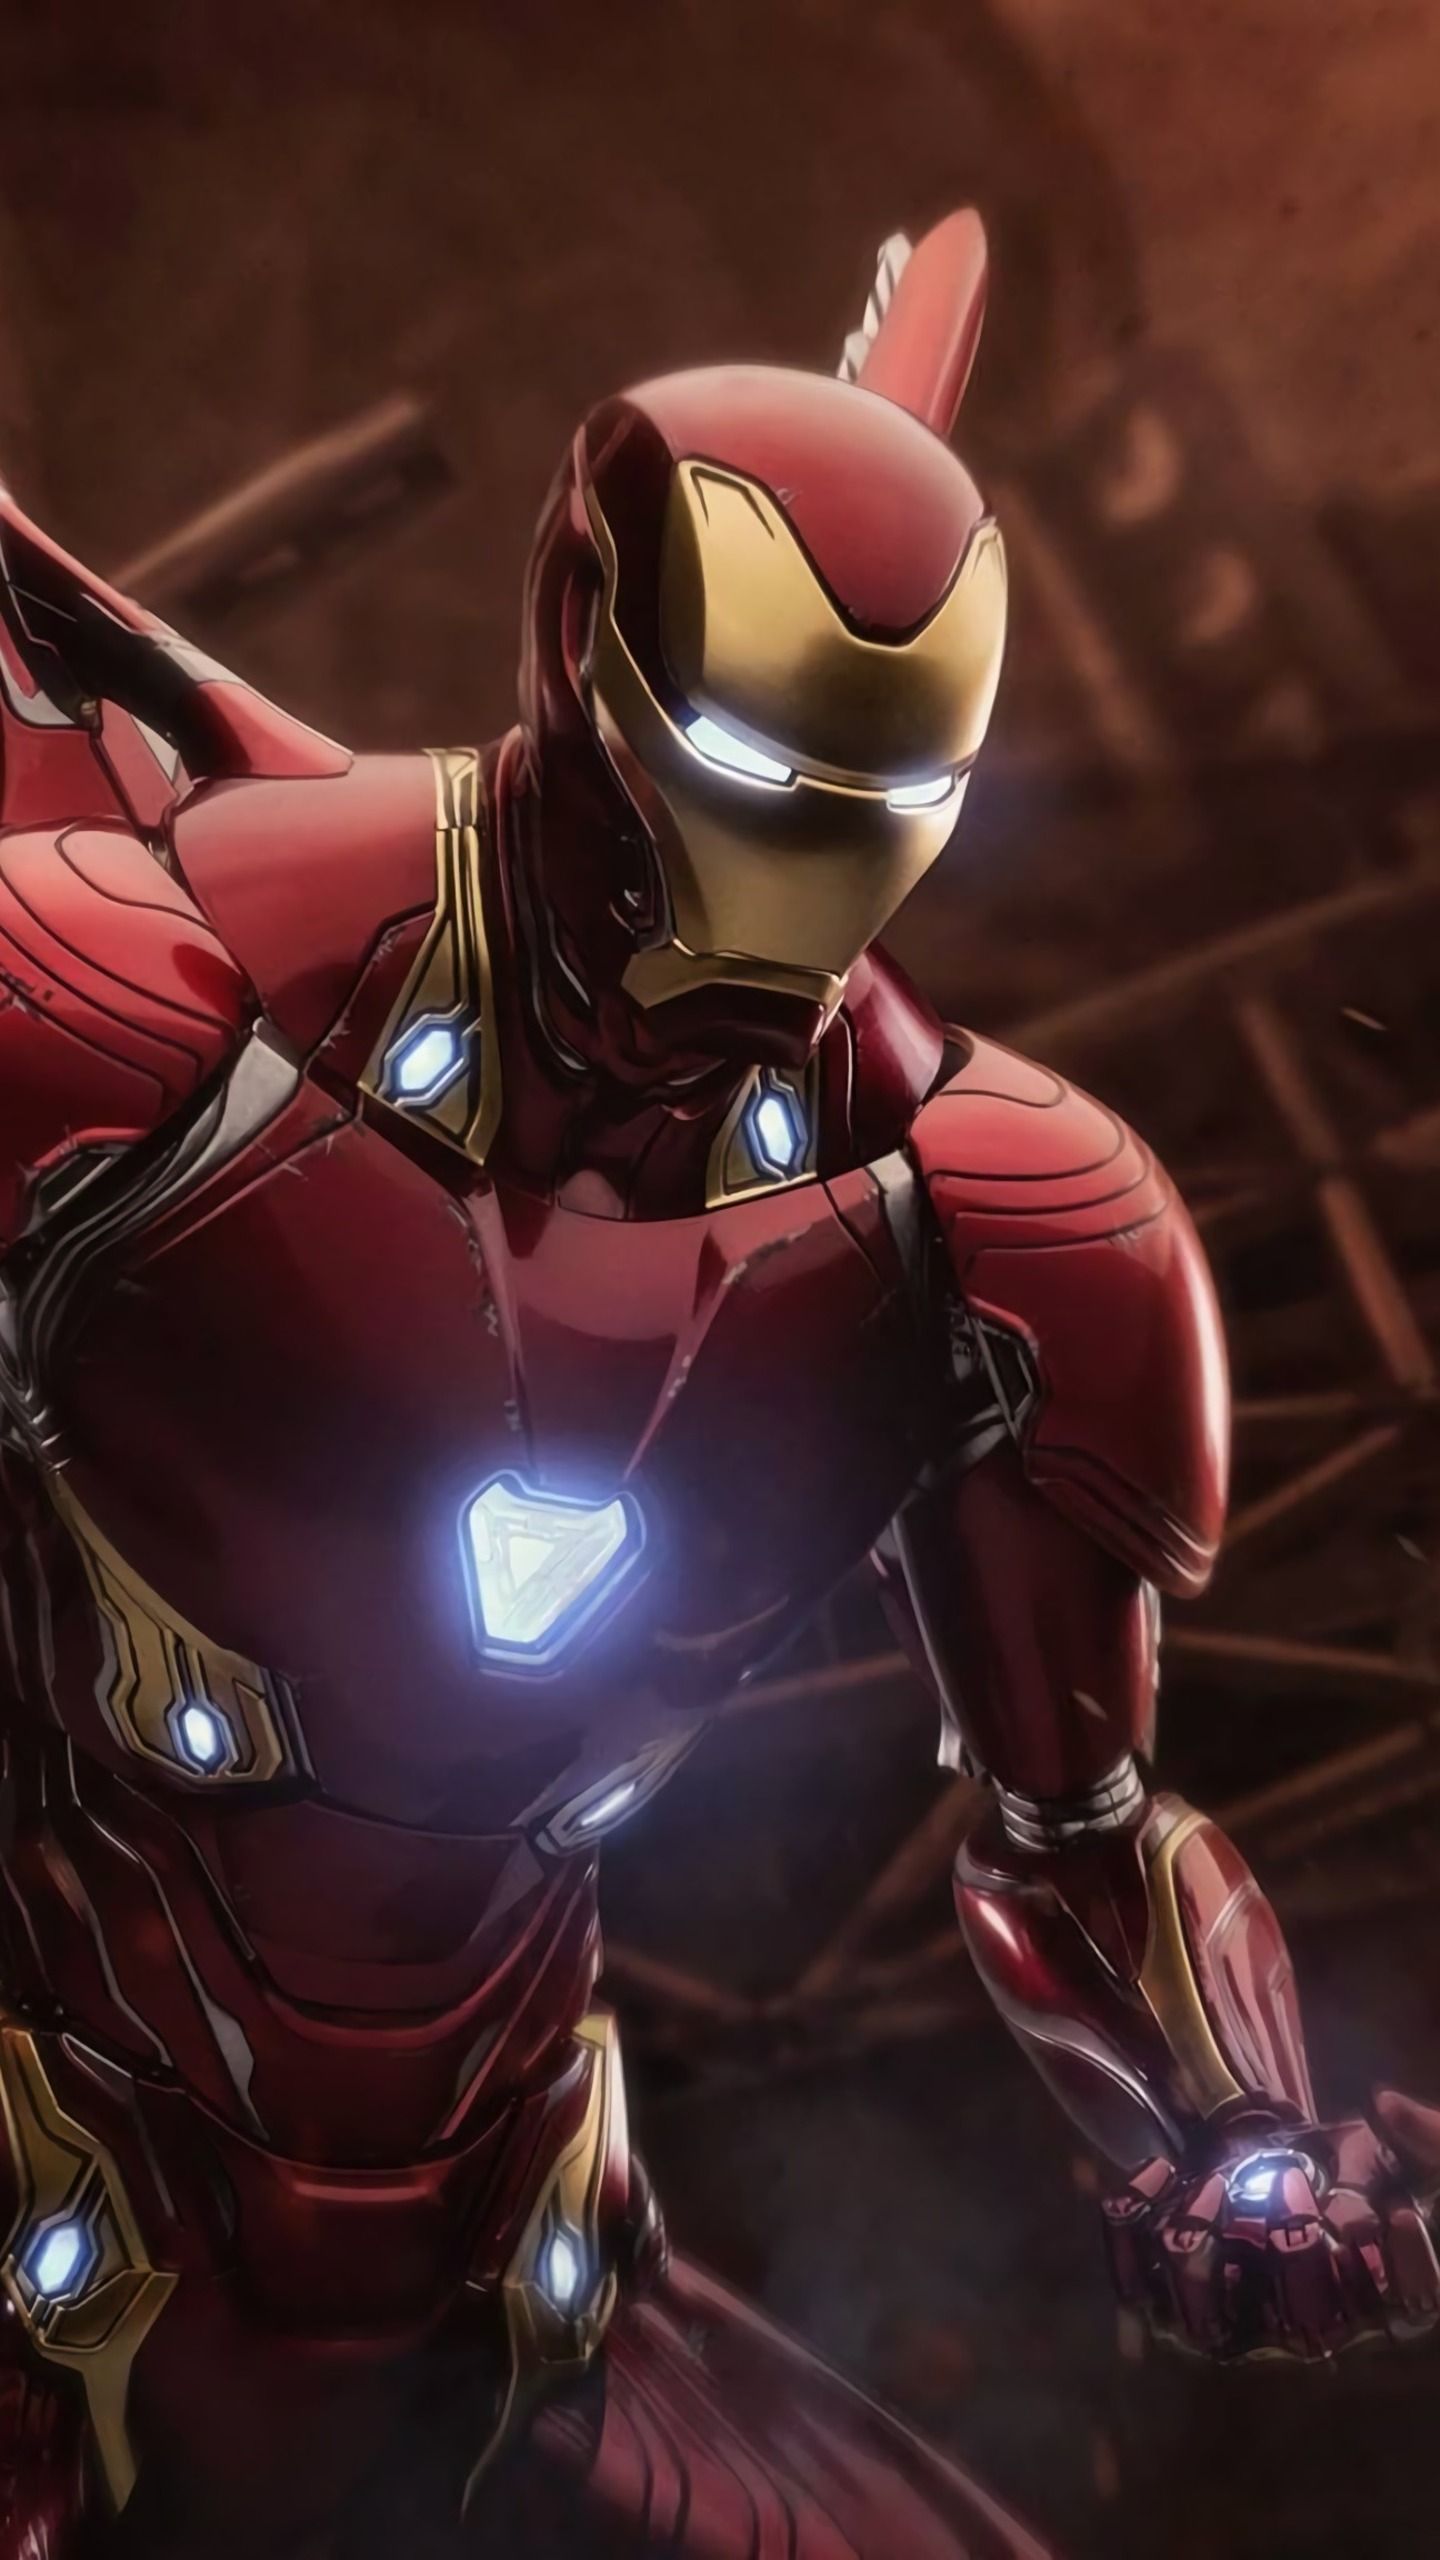 Best Team Stark image. Iron man, Iron man tony stark